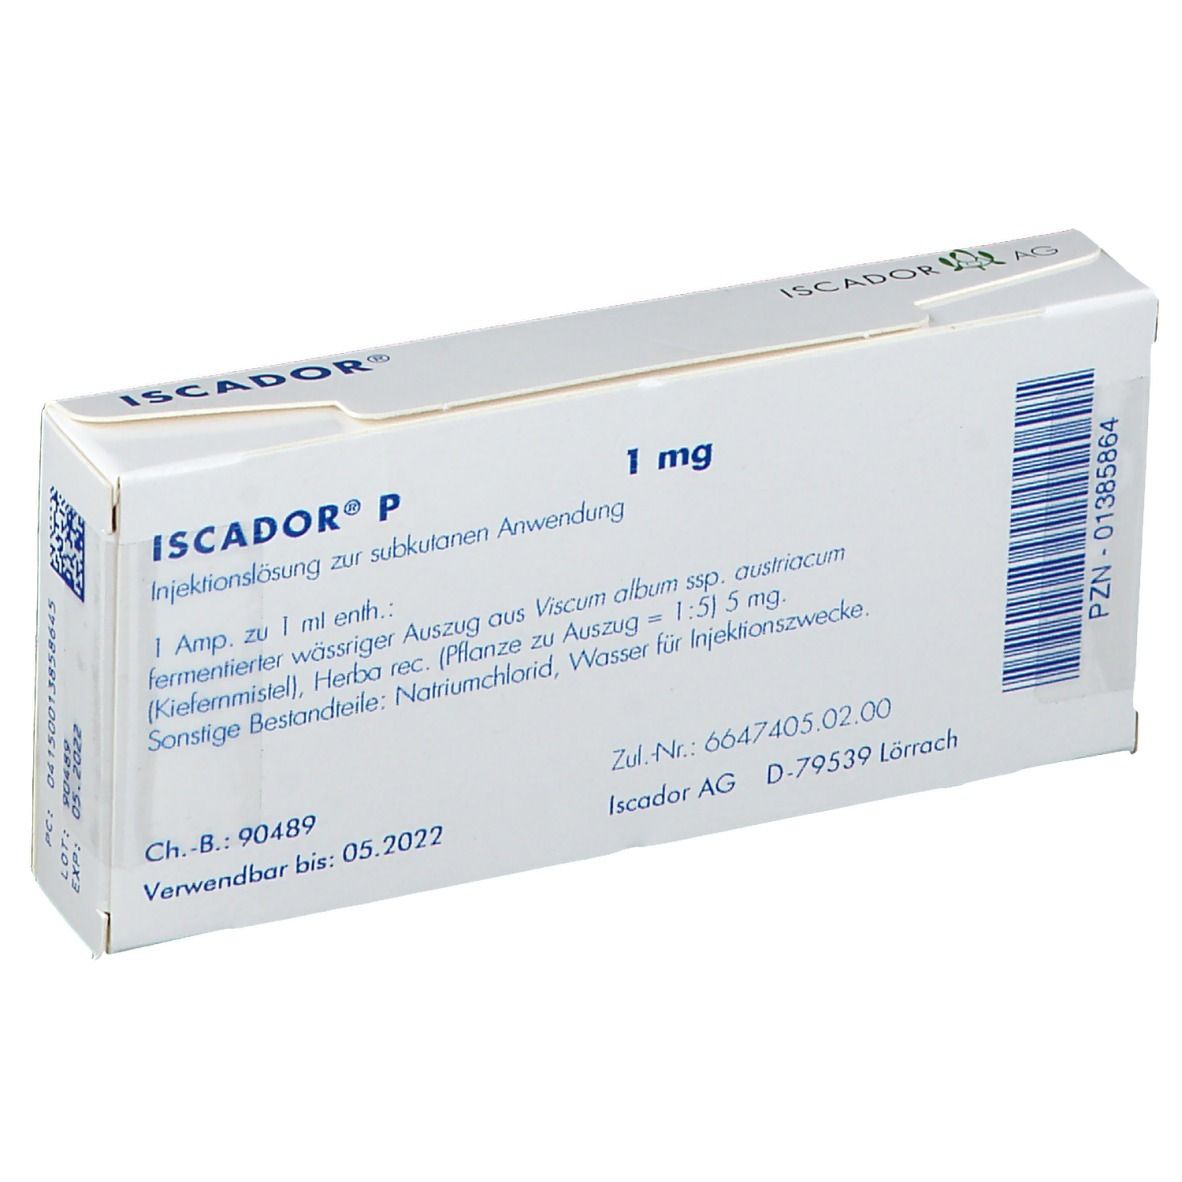 ISCADOR® P 1 mg